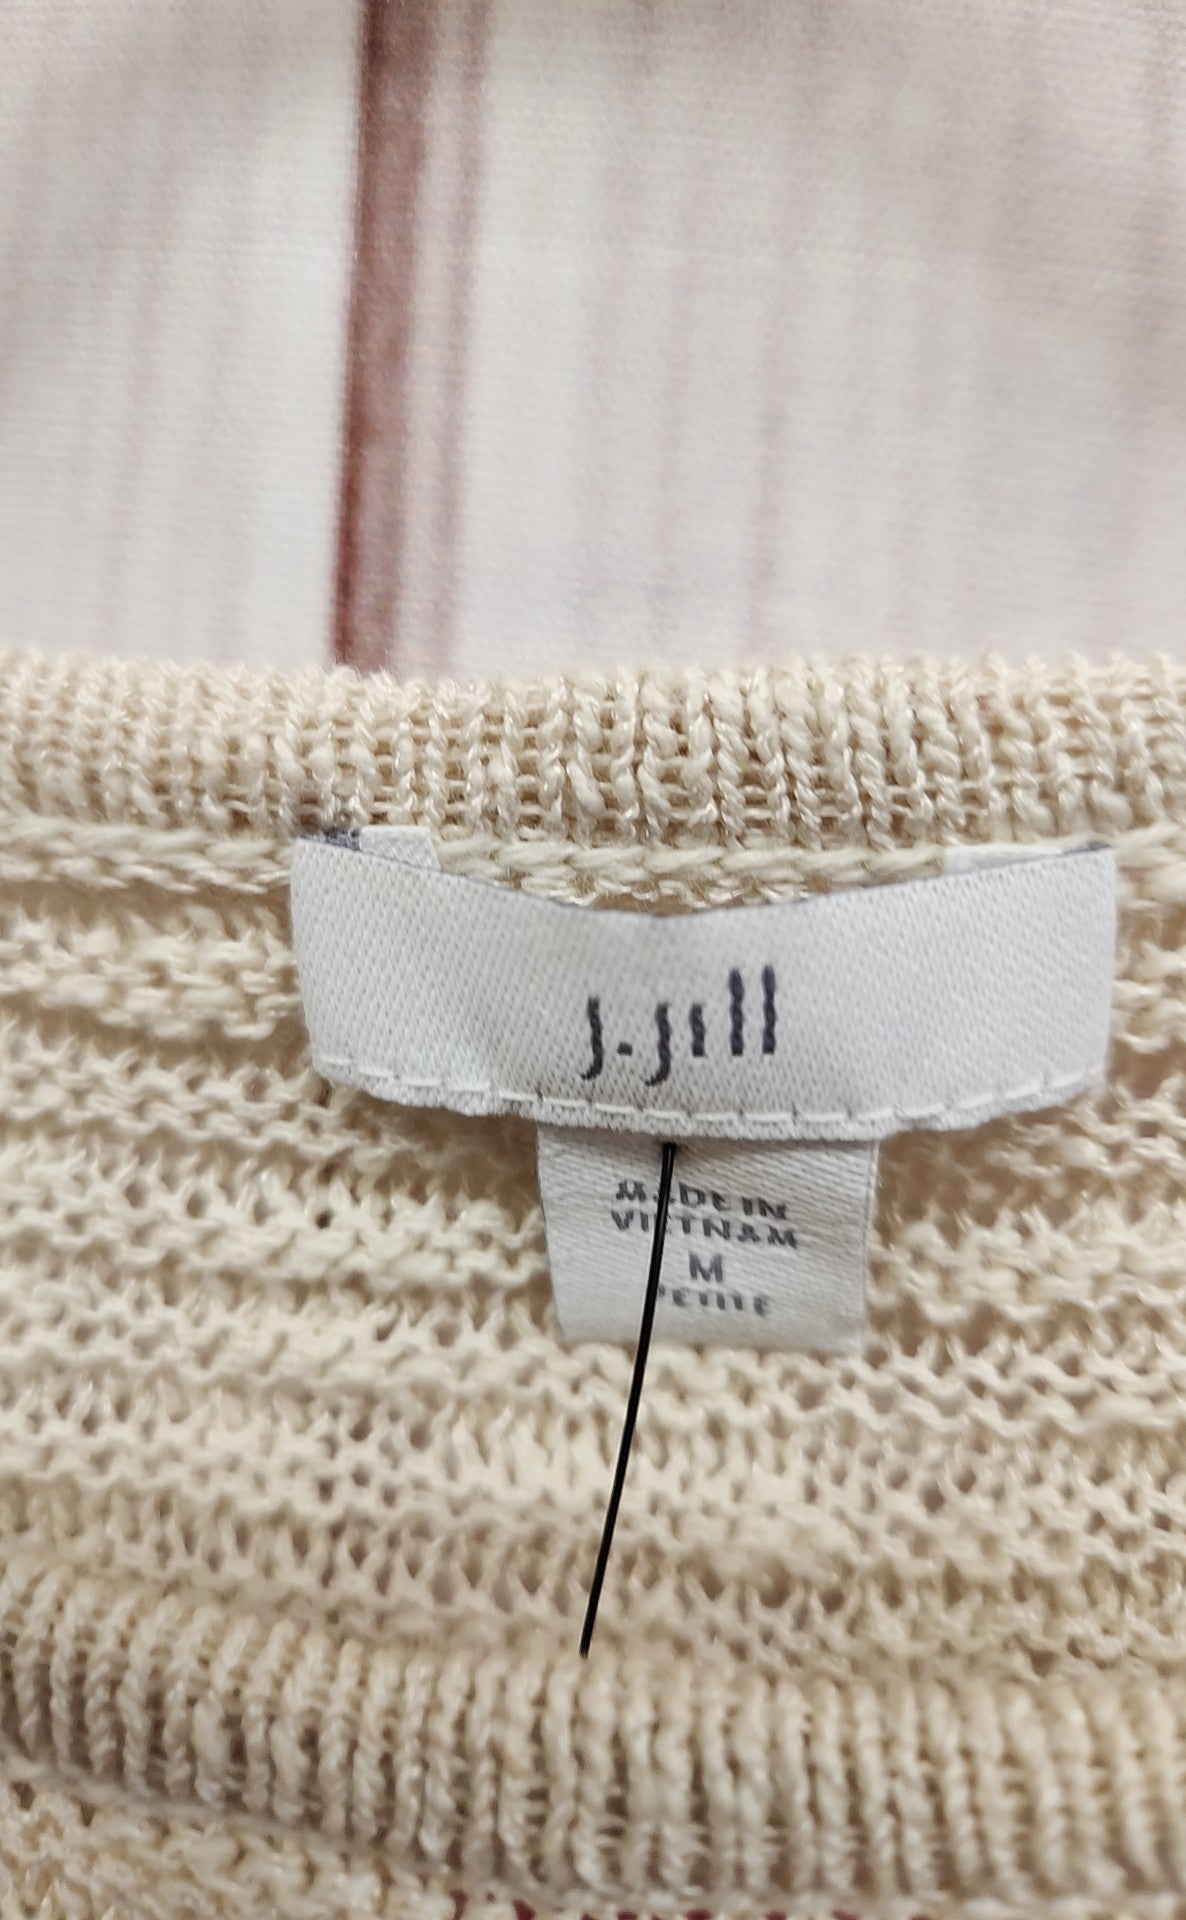 J Jill Women's Size M Petite Beige Cotton Blend Sweater